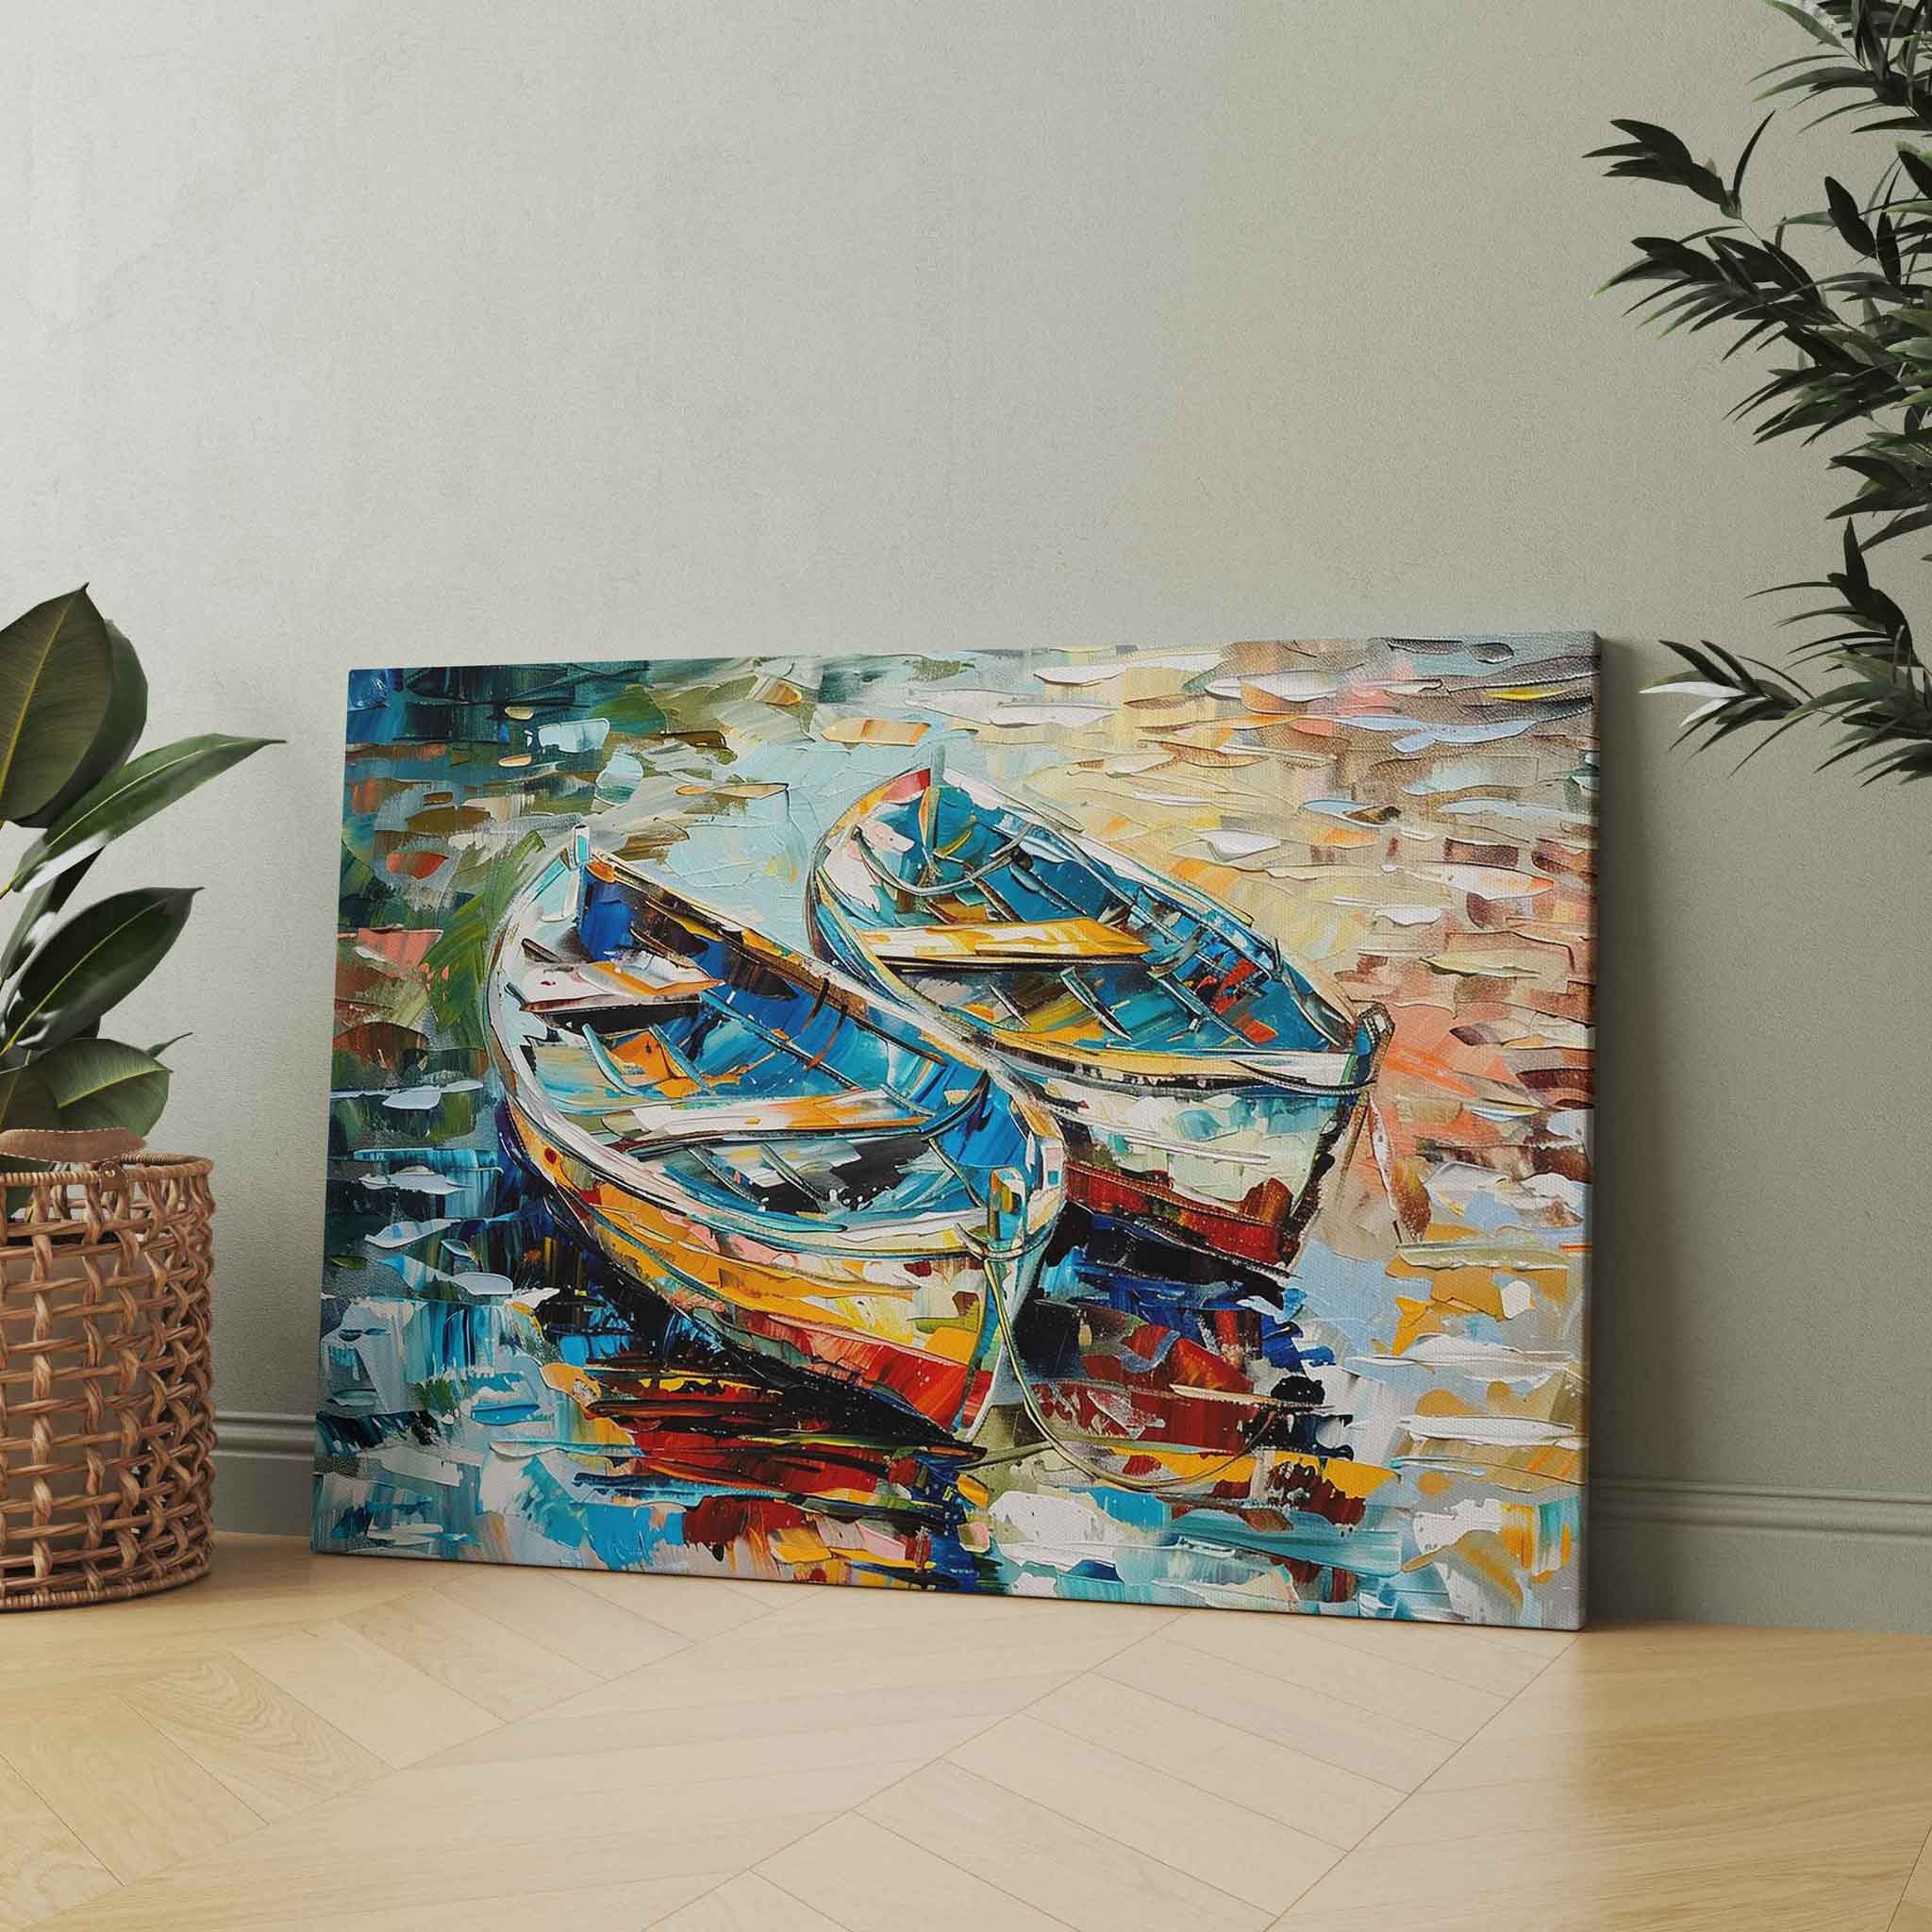 Boots-Gemälde auf Leinwand | Farbenfrohe Wandkunst Kunstwerk